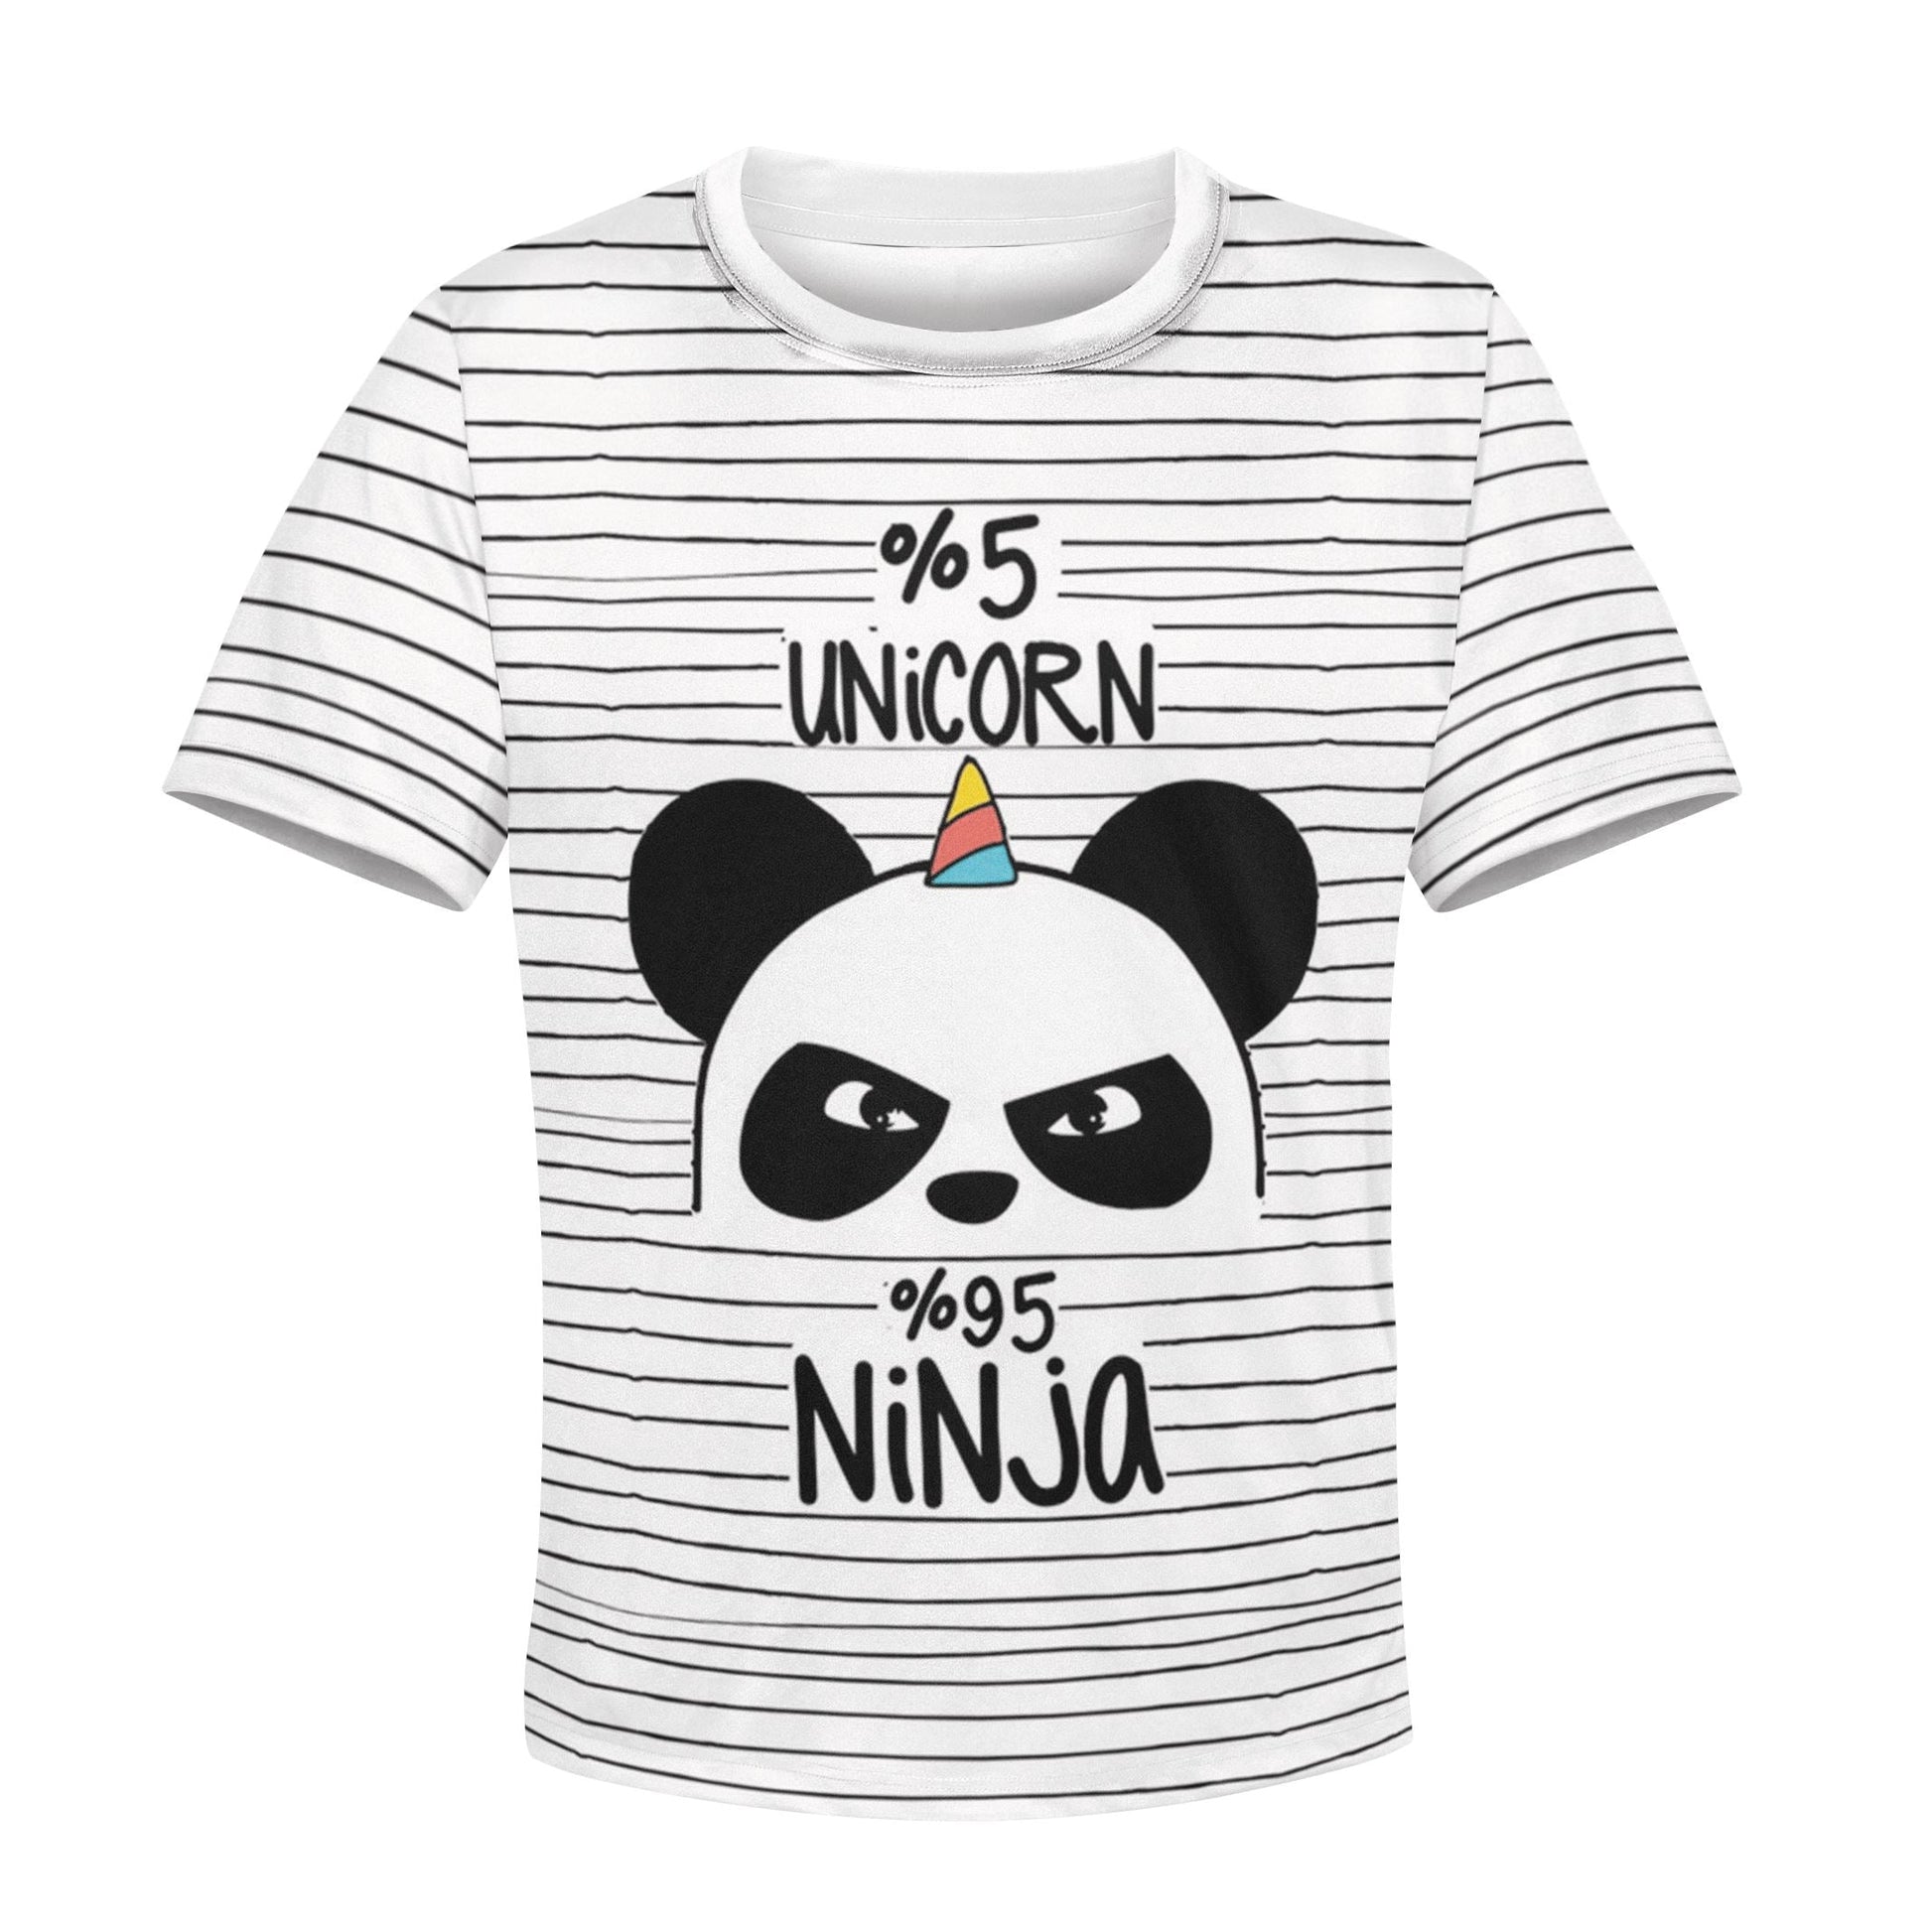 5% Unicorn 95% Ninja Custom Hoodies T-shirt Apparel HD-UNI110112K kid 3D apparel Kid T-Shirt XS 